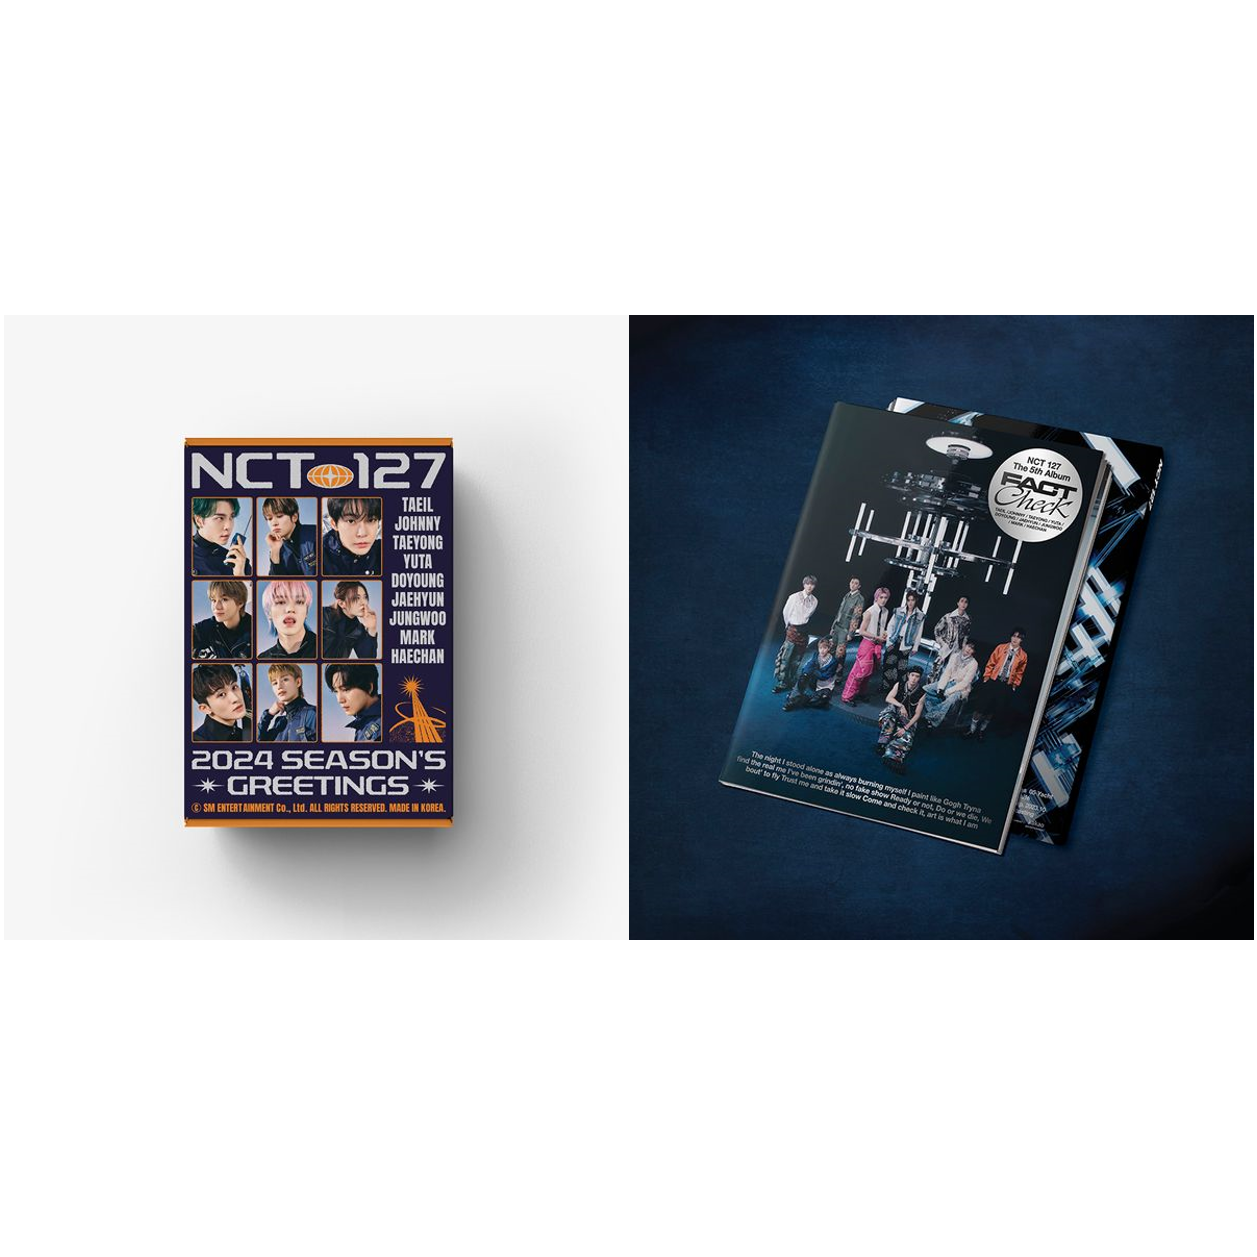 [全款][台历+专辑] [套装] [Ktown4u Special Gift] [NCT 127] 2024 SEASON'S GREETINGS+NCT 127 - The 5th Album [Fact Check] (Chandelier Ver.) _中本悠太吧_YUTA